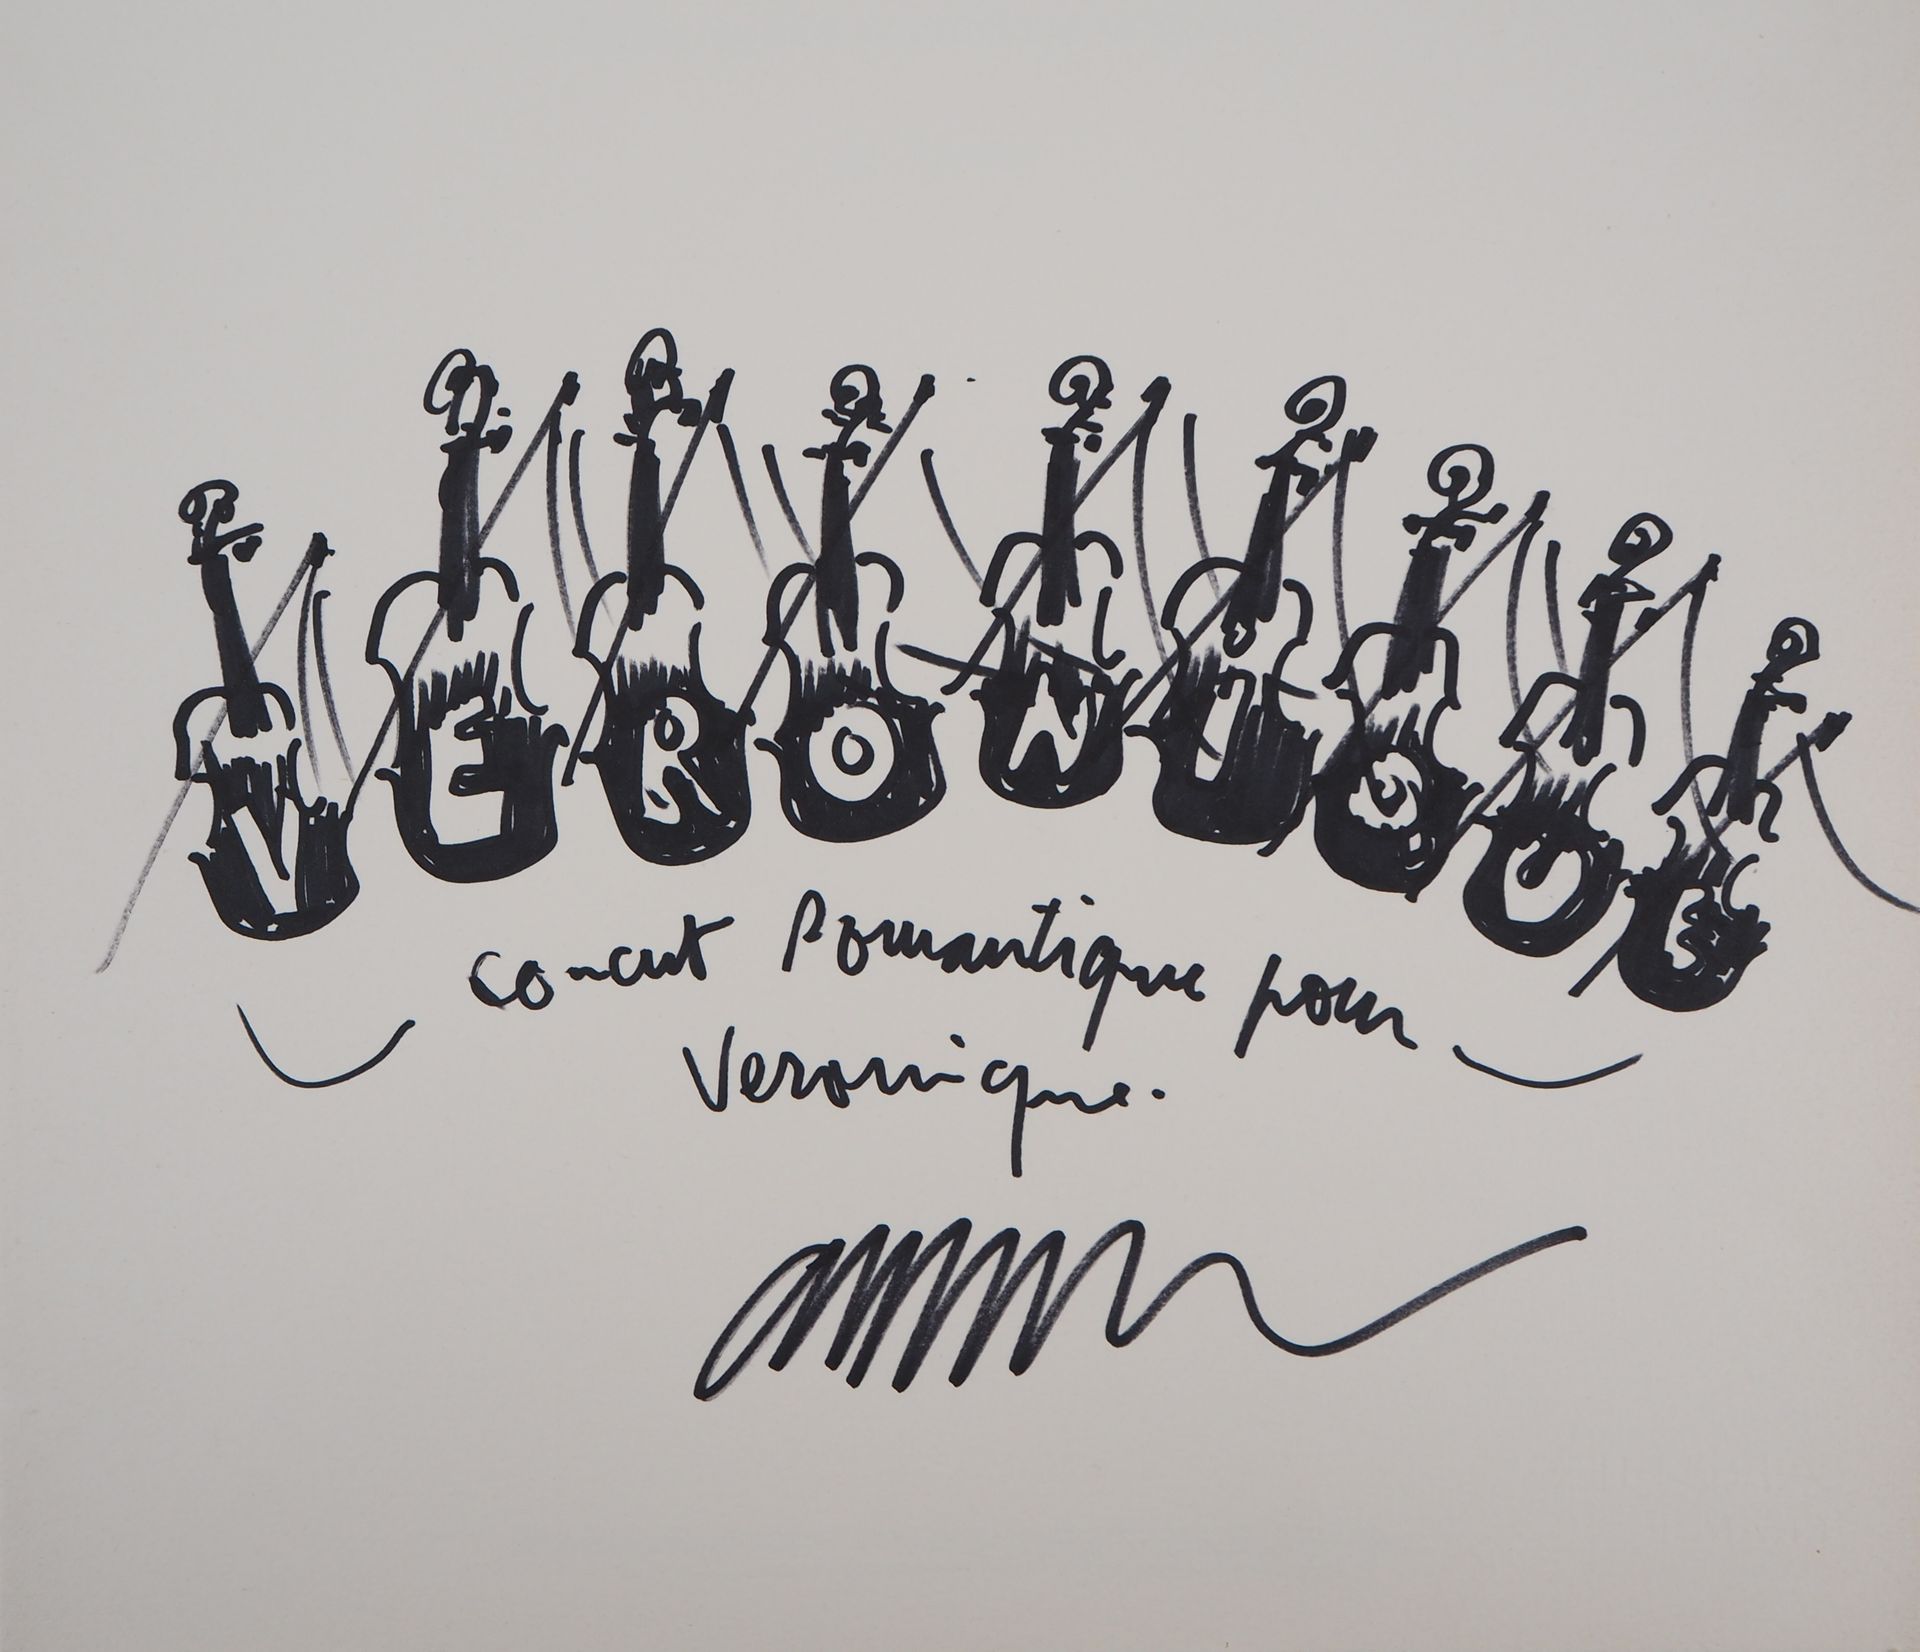 ARMAN ARMAN（阿尔曼-费尔南德斯，被称为）。

小提琴，浪漫主义音乐会

水墨原画

以墨水签署的

献给维罗妮克

牛皮纸上 32 x 38 cm
&hellip;